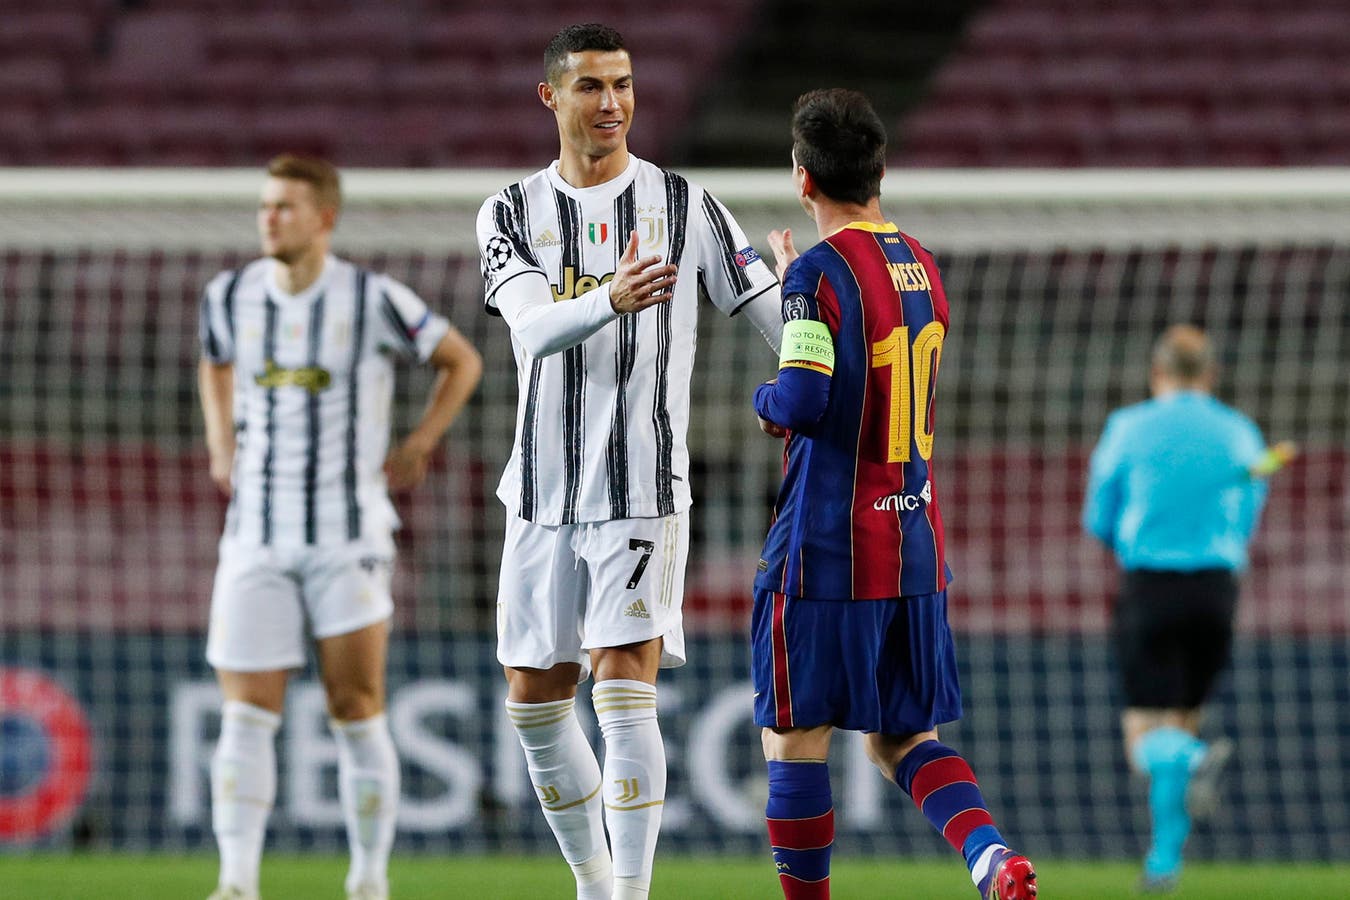 Từng là đối thủ trên sân, liệu Messi và Ronaldo sẽ là chung một màu áo trong tương lai?